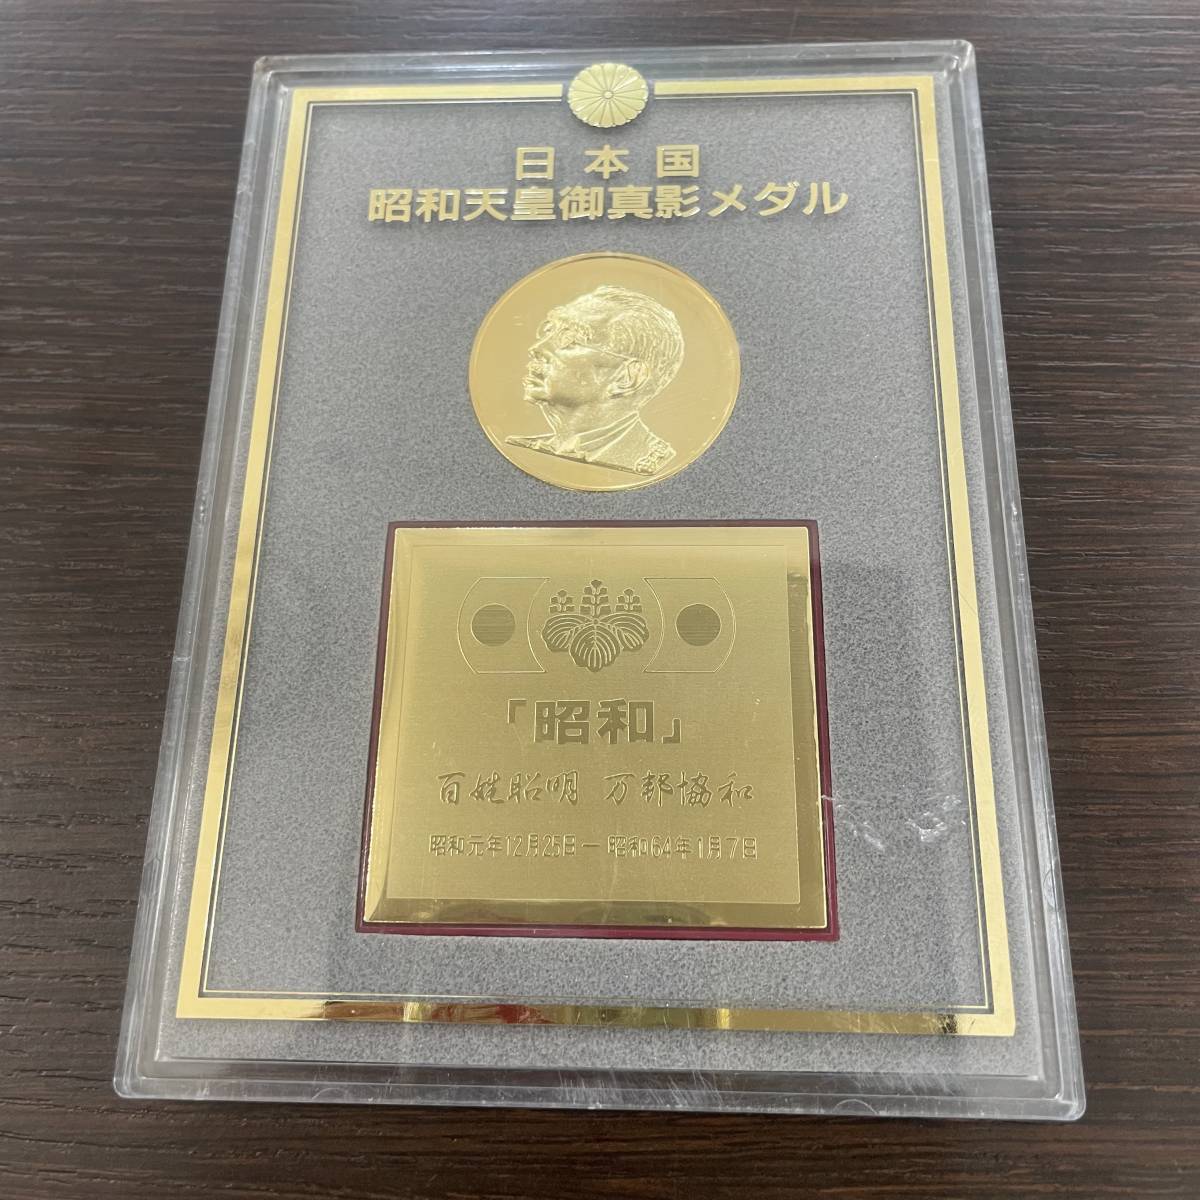 日本国 昭和天皇御真影メダル コレクション インテリア - 旧貨幣